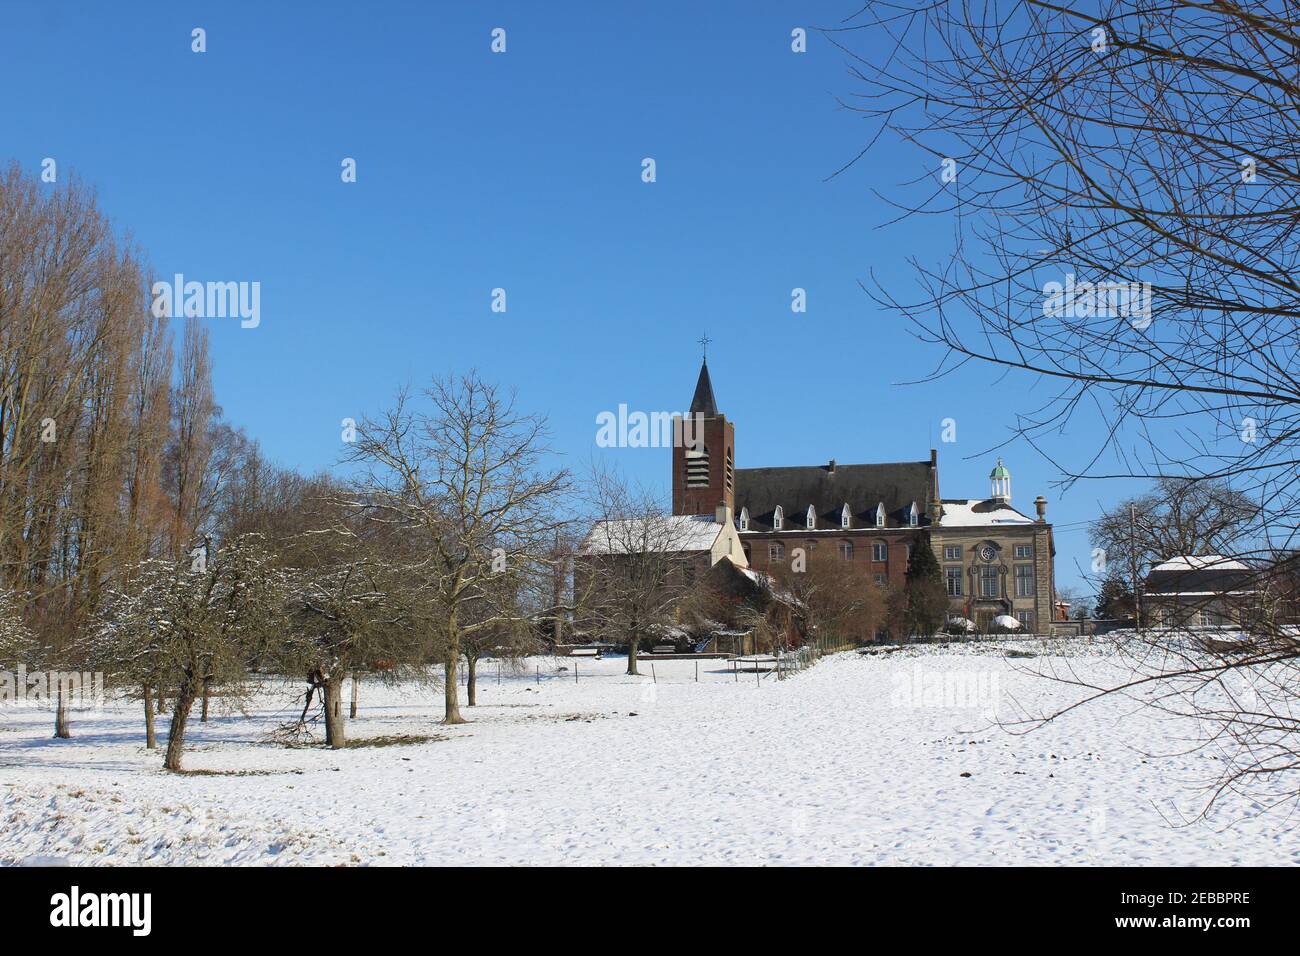 Paysage flamand recouvert de neige, face à l'abbaye d'Affligem, dans le Brabant flamand, Belgique. Avec espace de copie en haut à gauche Banque D'Images